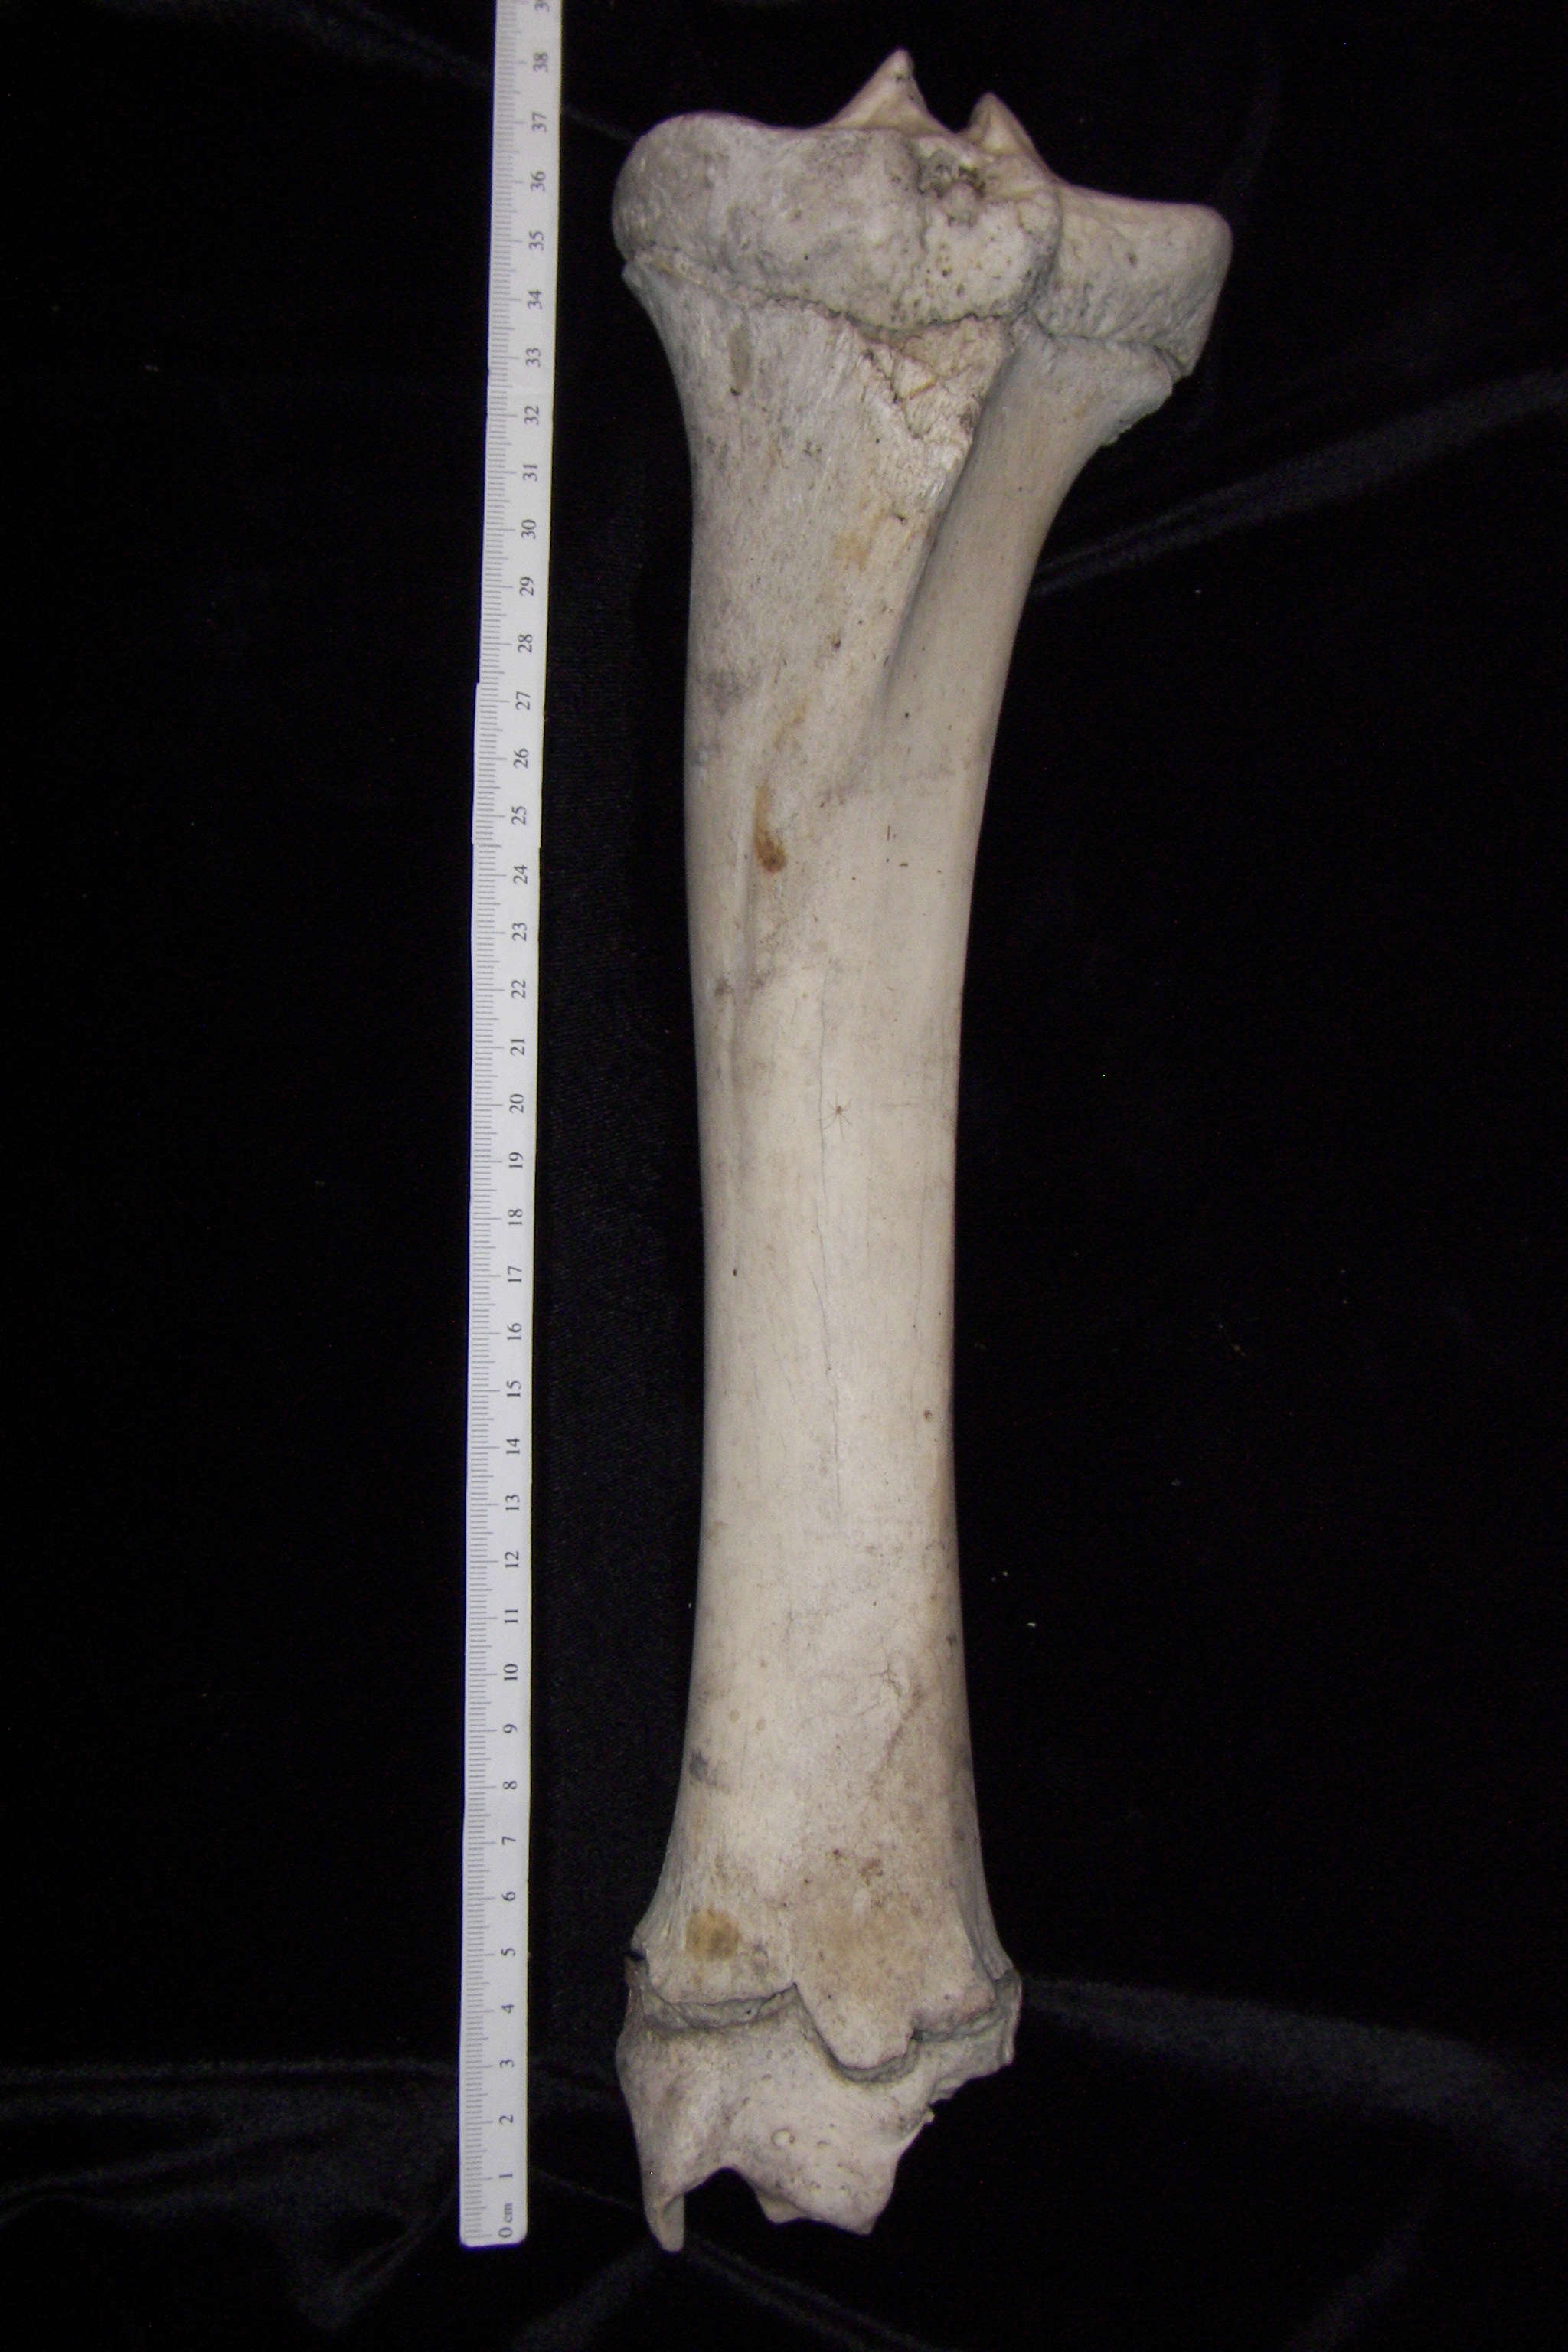 Cattle (Bos taurus) left tibia, anterior view